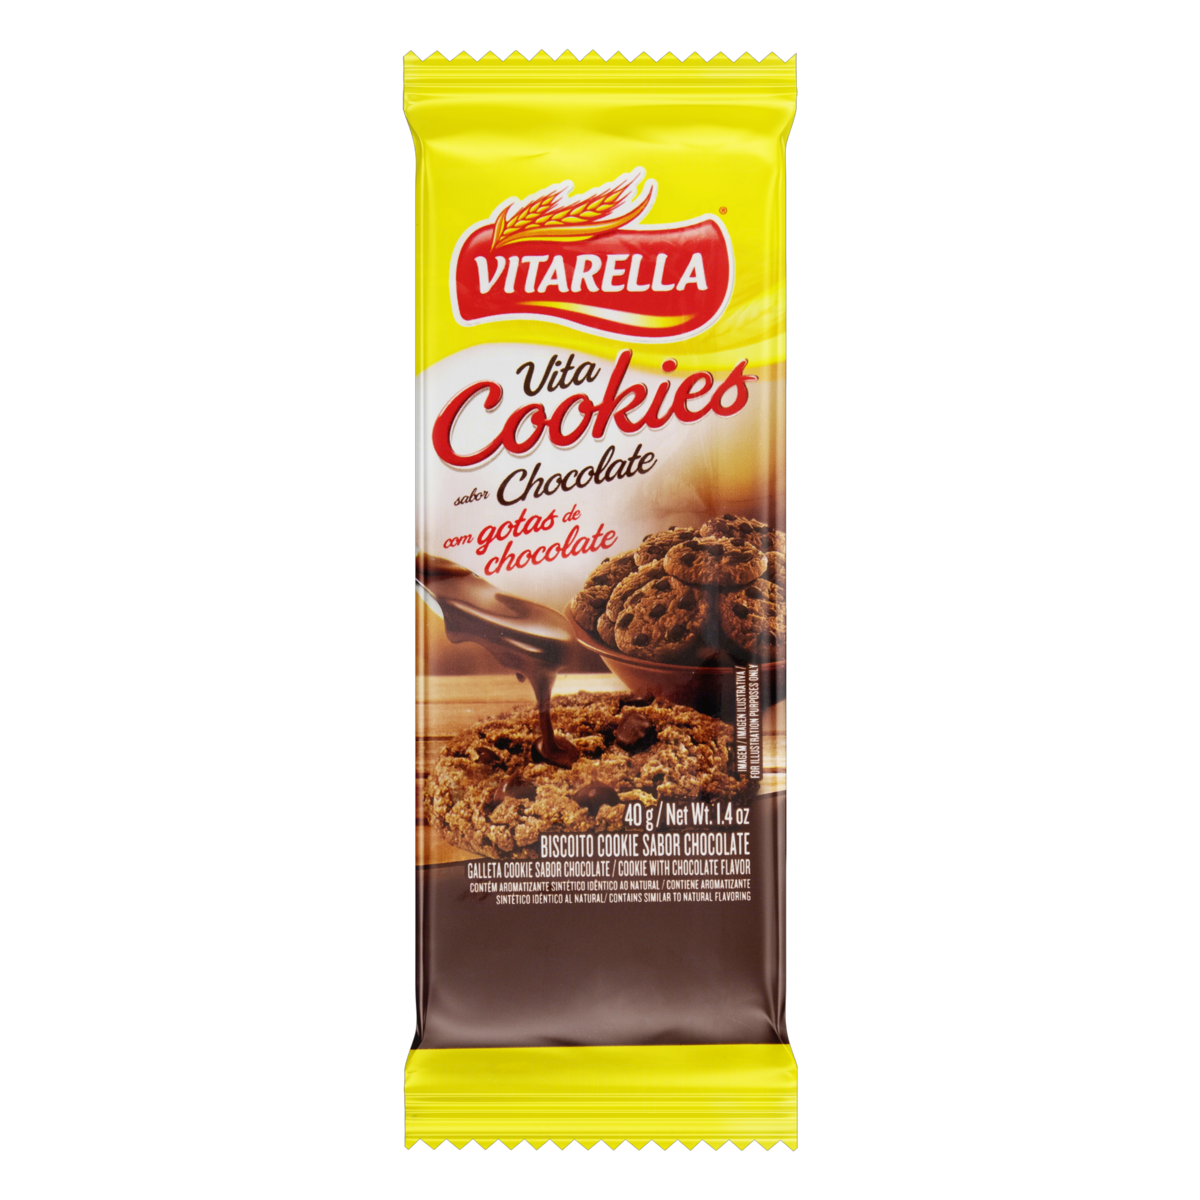 7896213004019 - BISCOITO COOKIE CHOCOLATE COM GOTAS DE CHOCOLATE VITARELLA PACOTE 40G